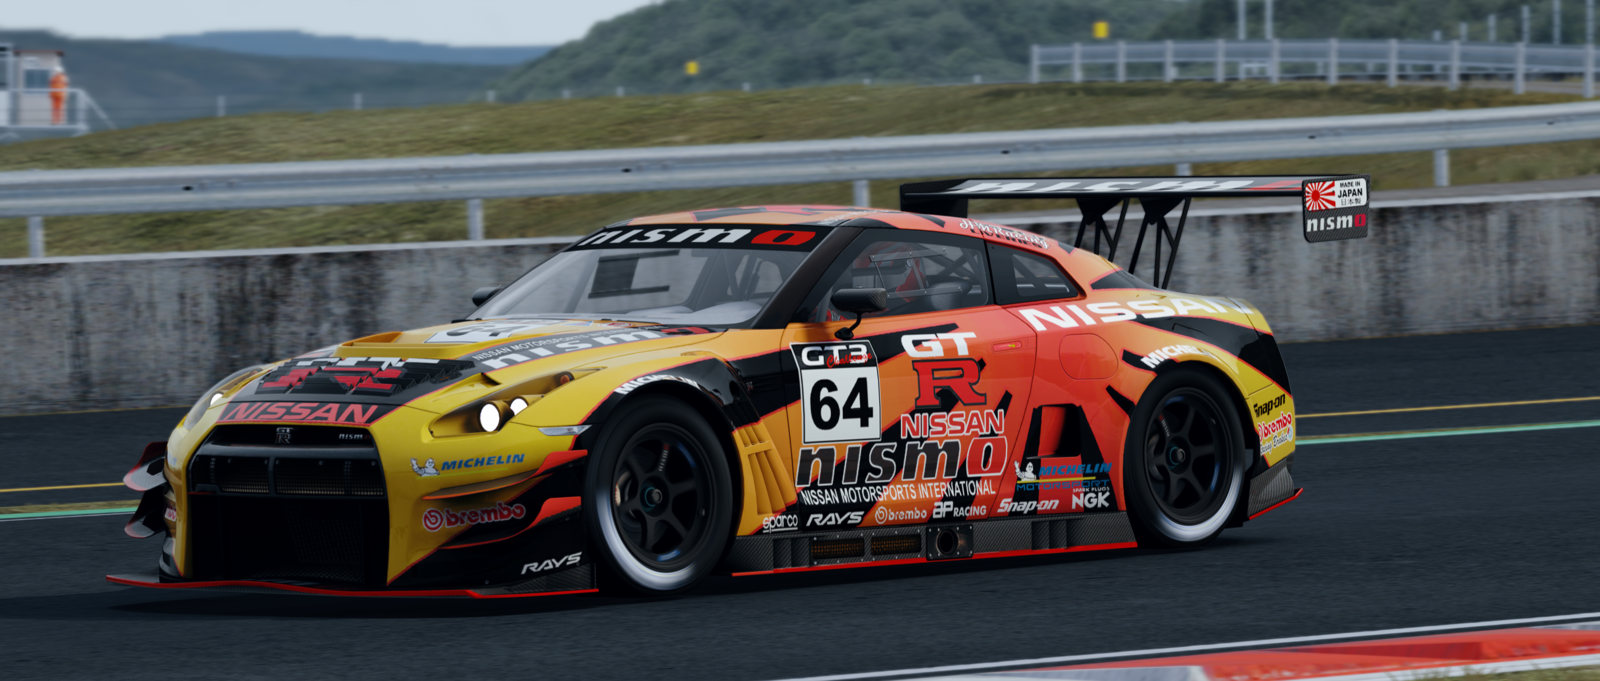 Nissan GTR GT3 Nismo V2 09.png